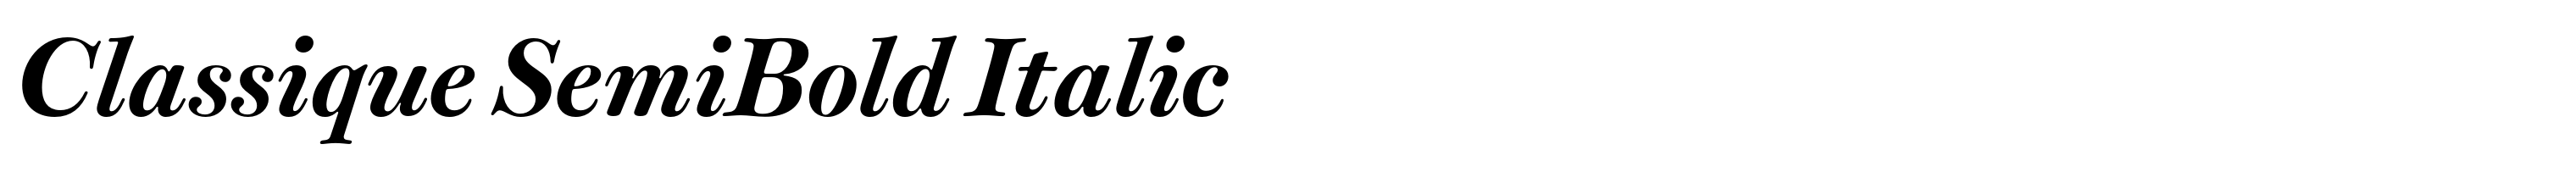 Classique SemiBold Italic